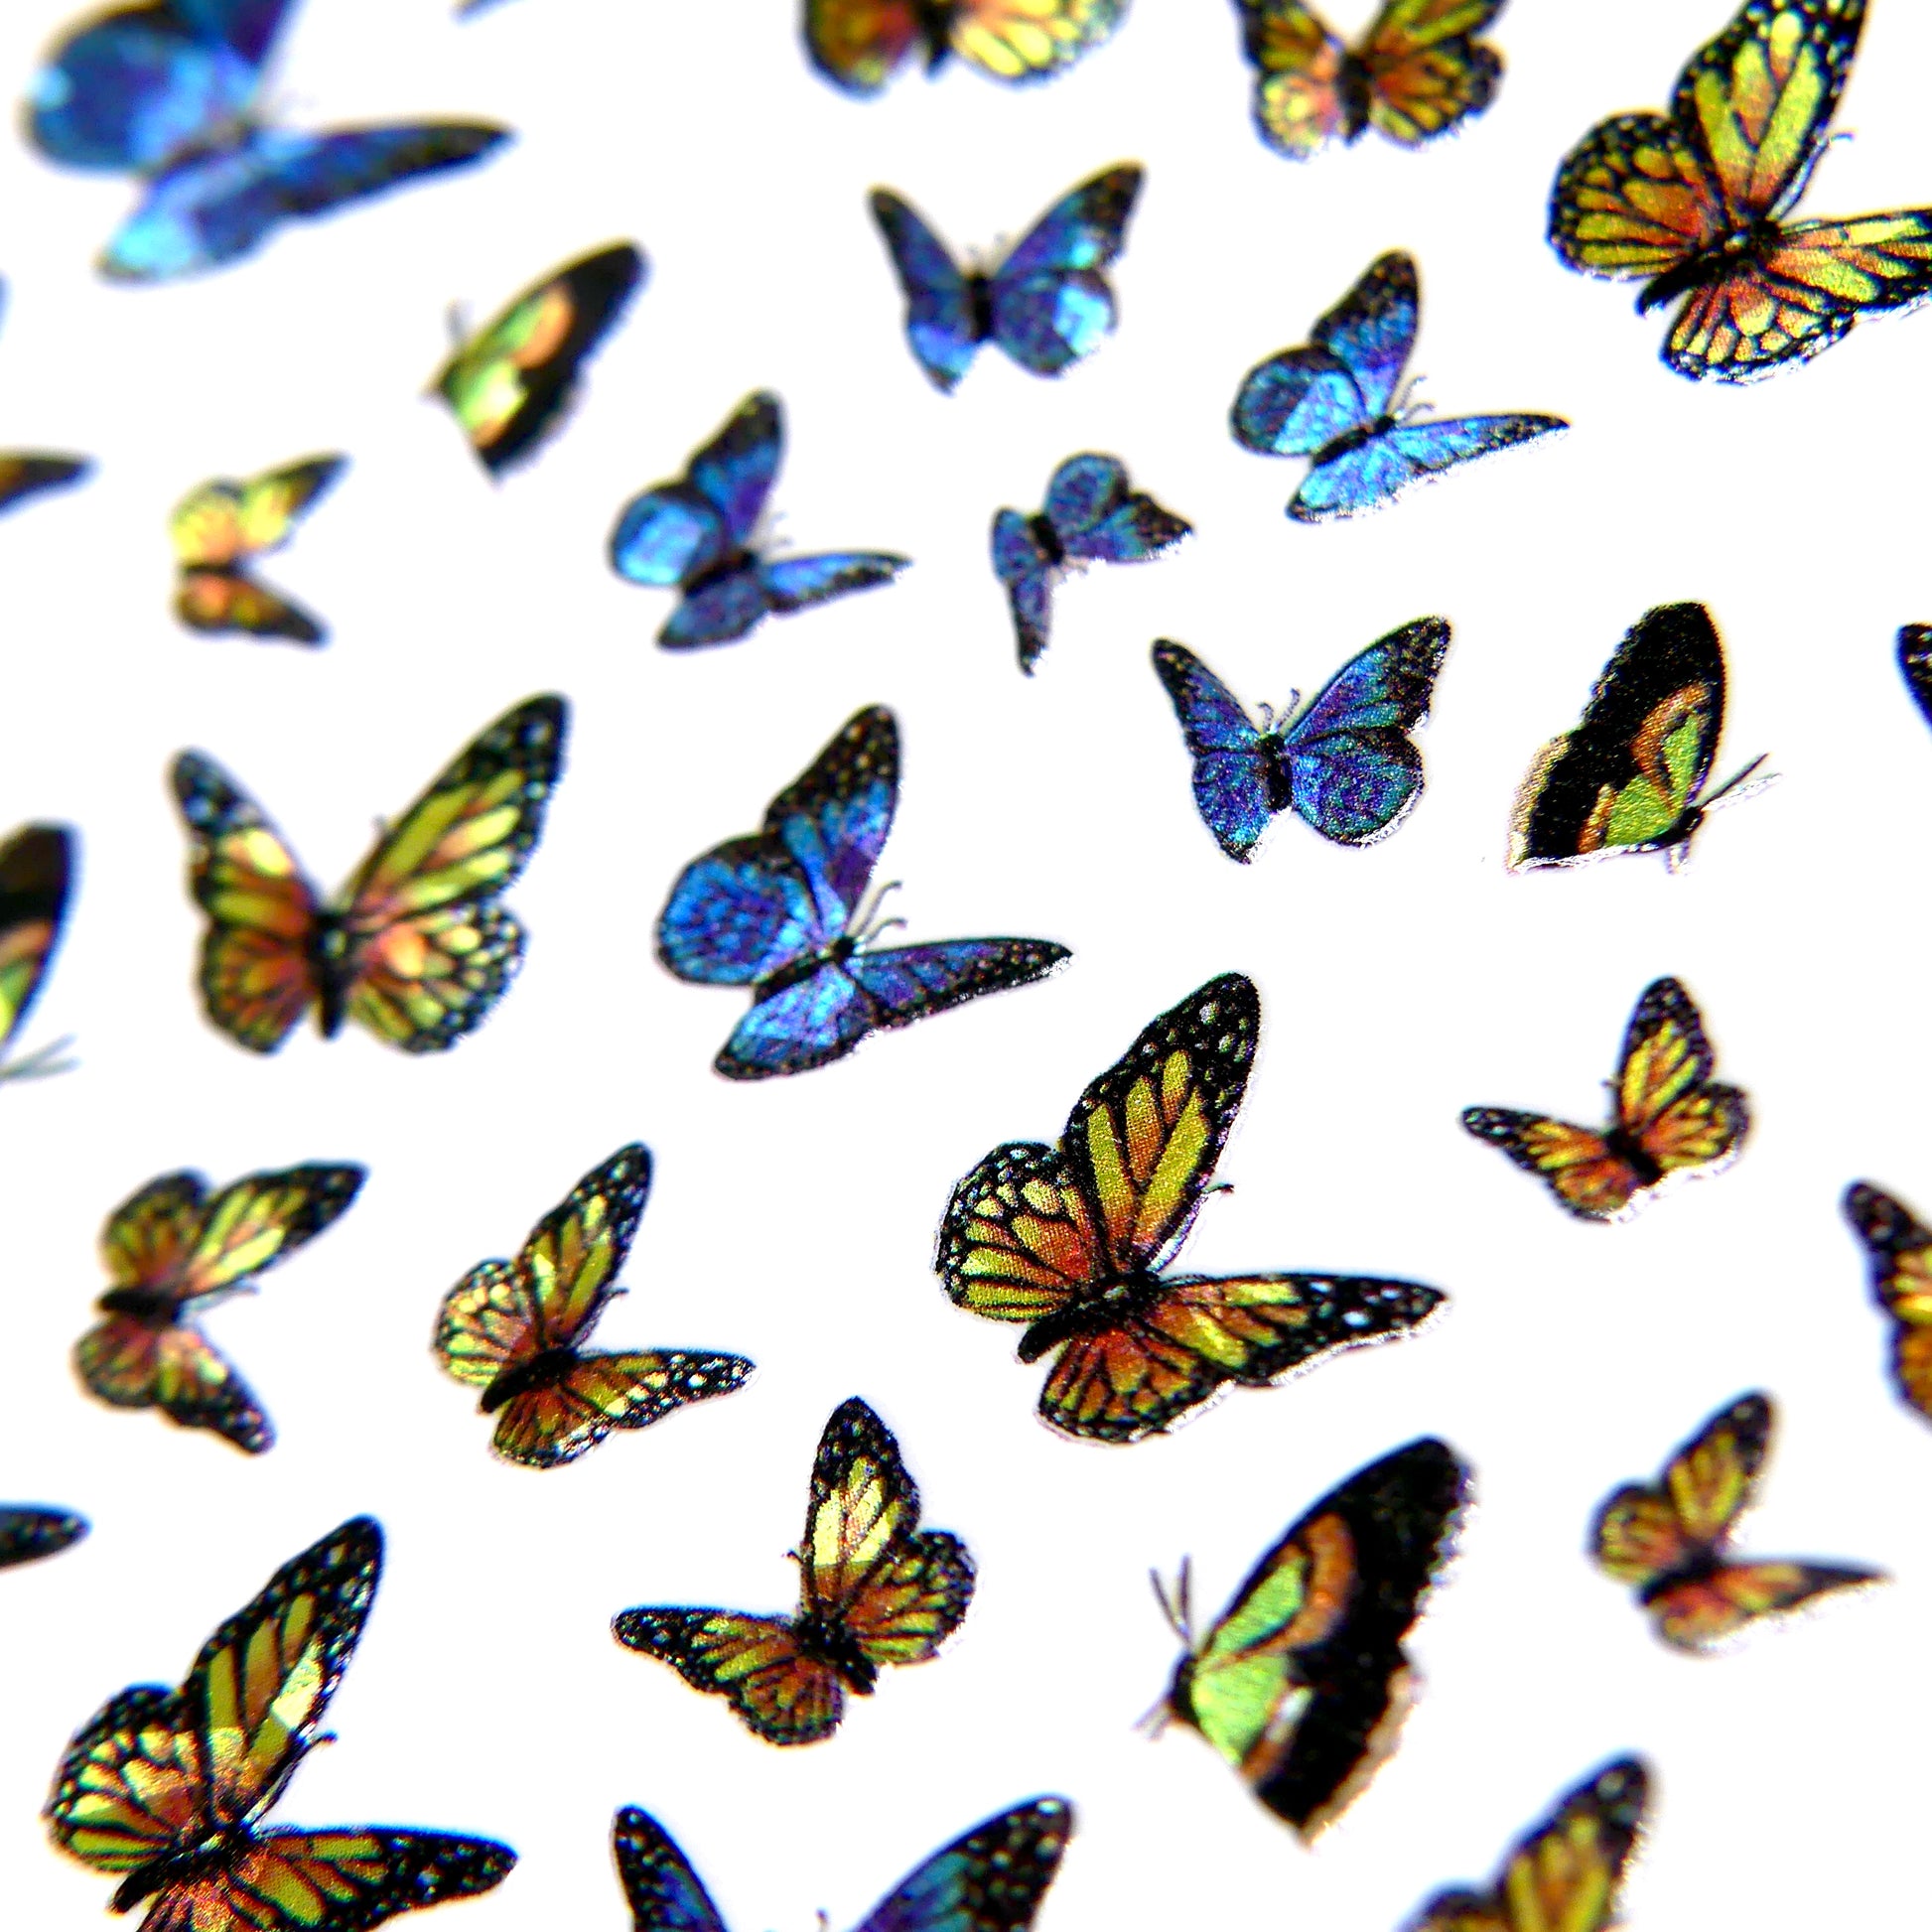 Holographic Butterflies Sticker #2 - My Little Nail Art Shop